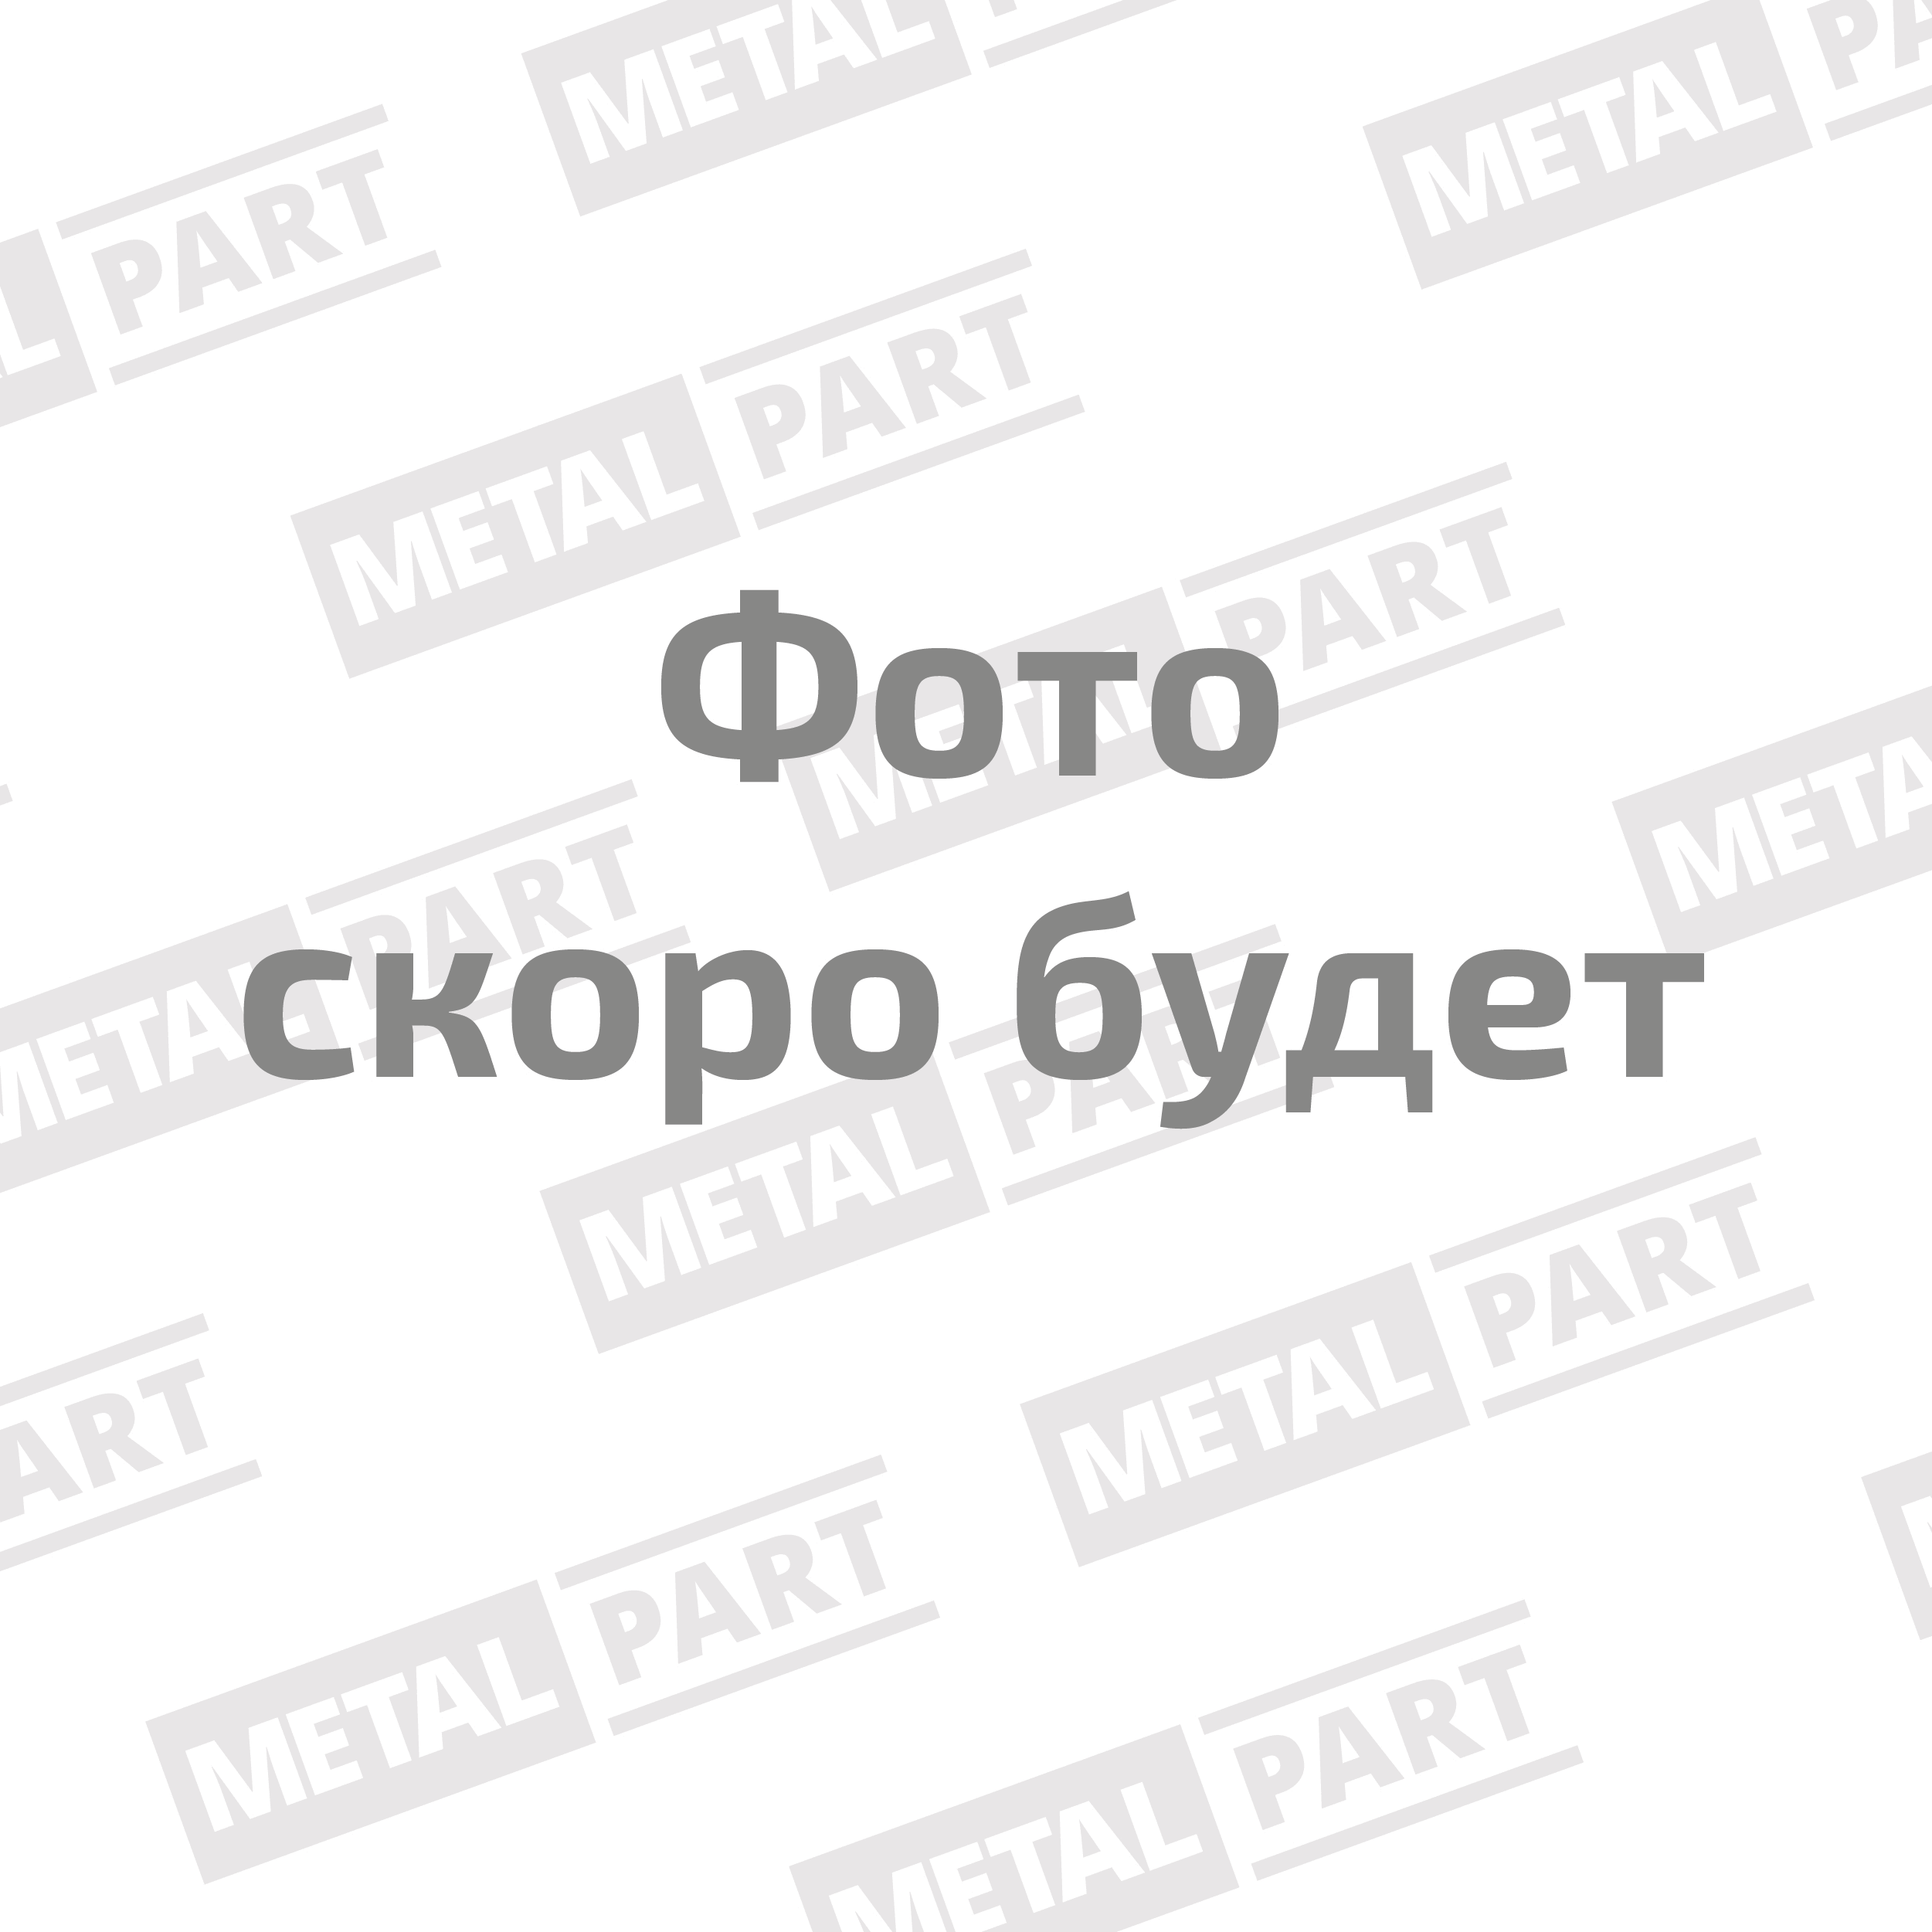 Датчик давления масла MetalPart для автомобилей "УАЗ", "ГАЗ" с двиг. УМЗ 420,421, 4213, 4216 Евро-3